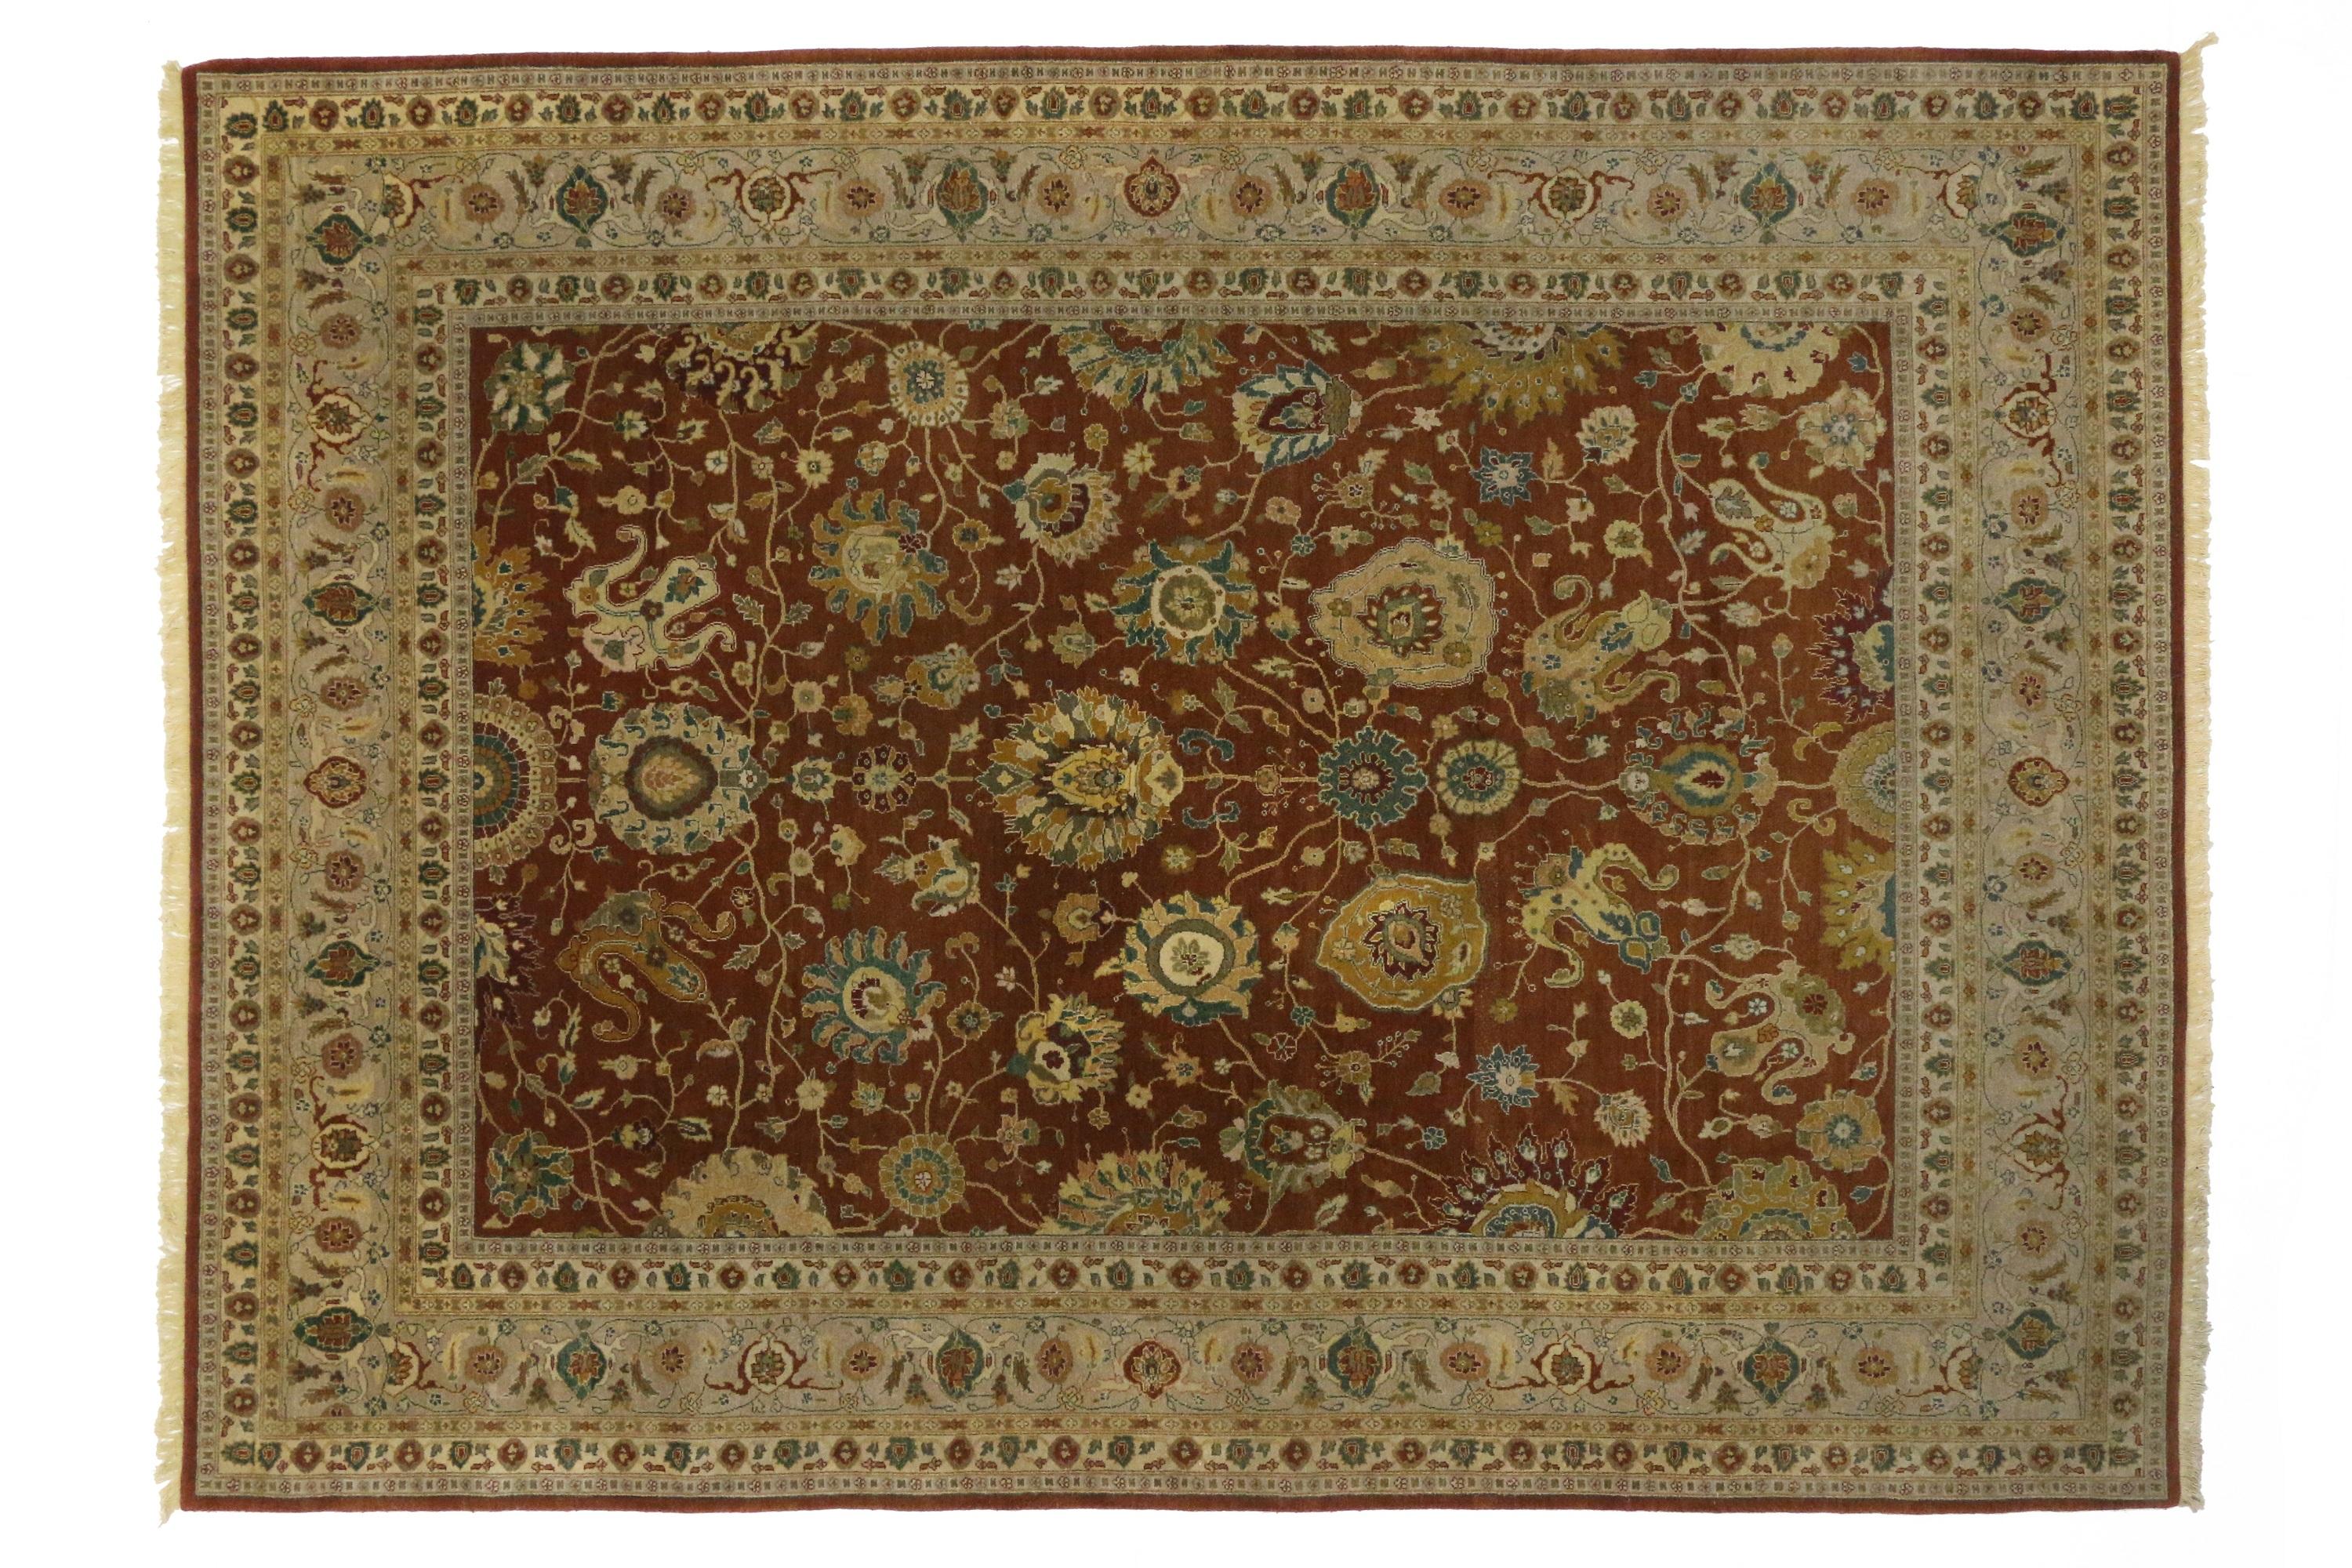 76709, klassischer indischer Teppich mit traditionellem Stil und floralem Allover-Muster. Dieser opulente Teppich im traditionellen Stil zeichnet sich durch ein warmes, gewürzfarbenes Feld aus, das mit üppigen, verschlungenen Palmetten in Safran,